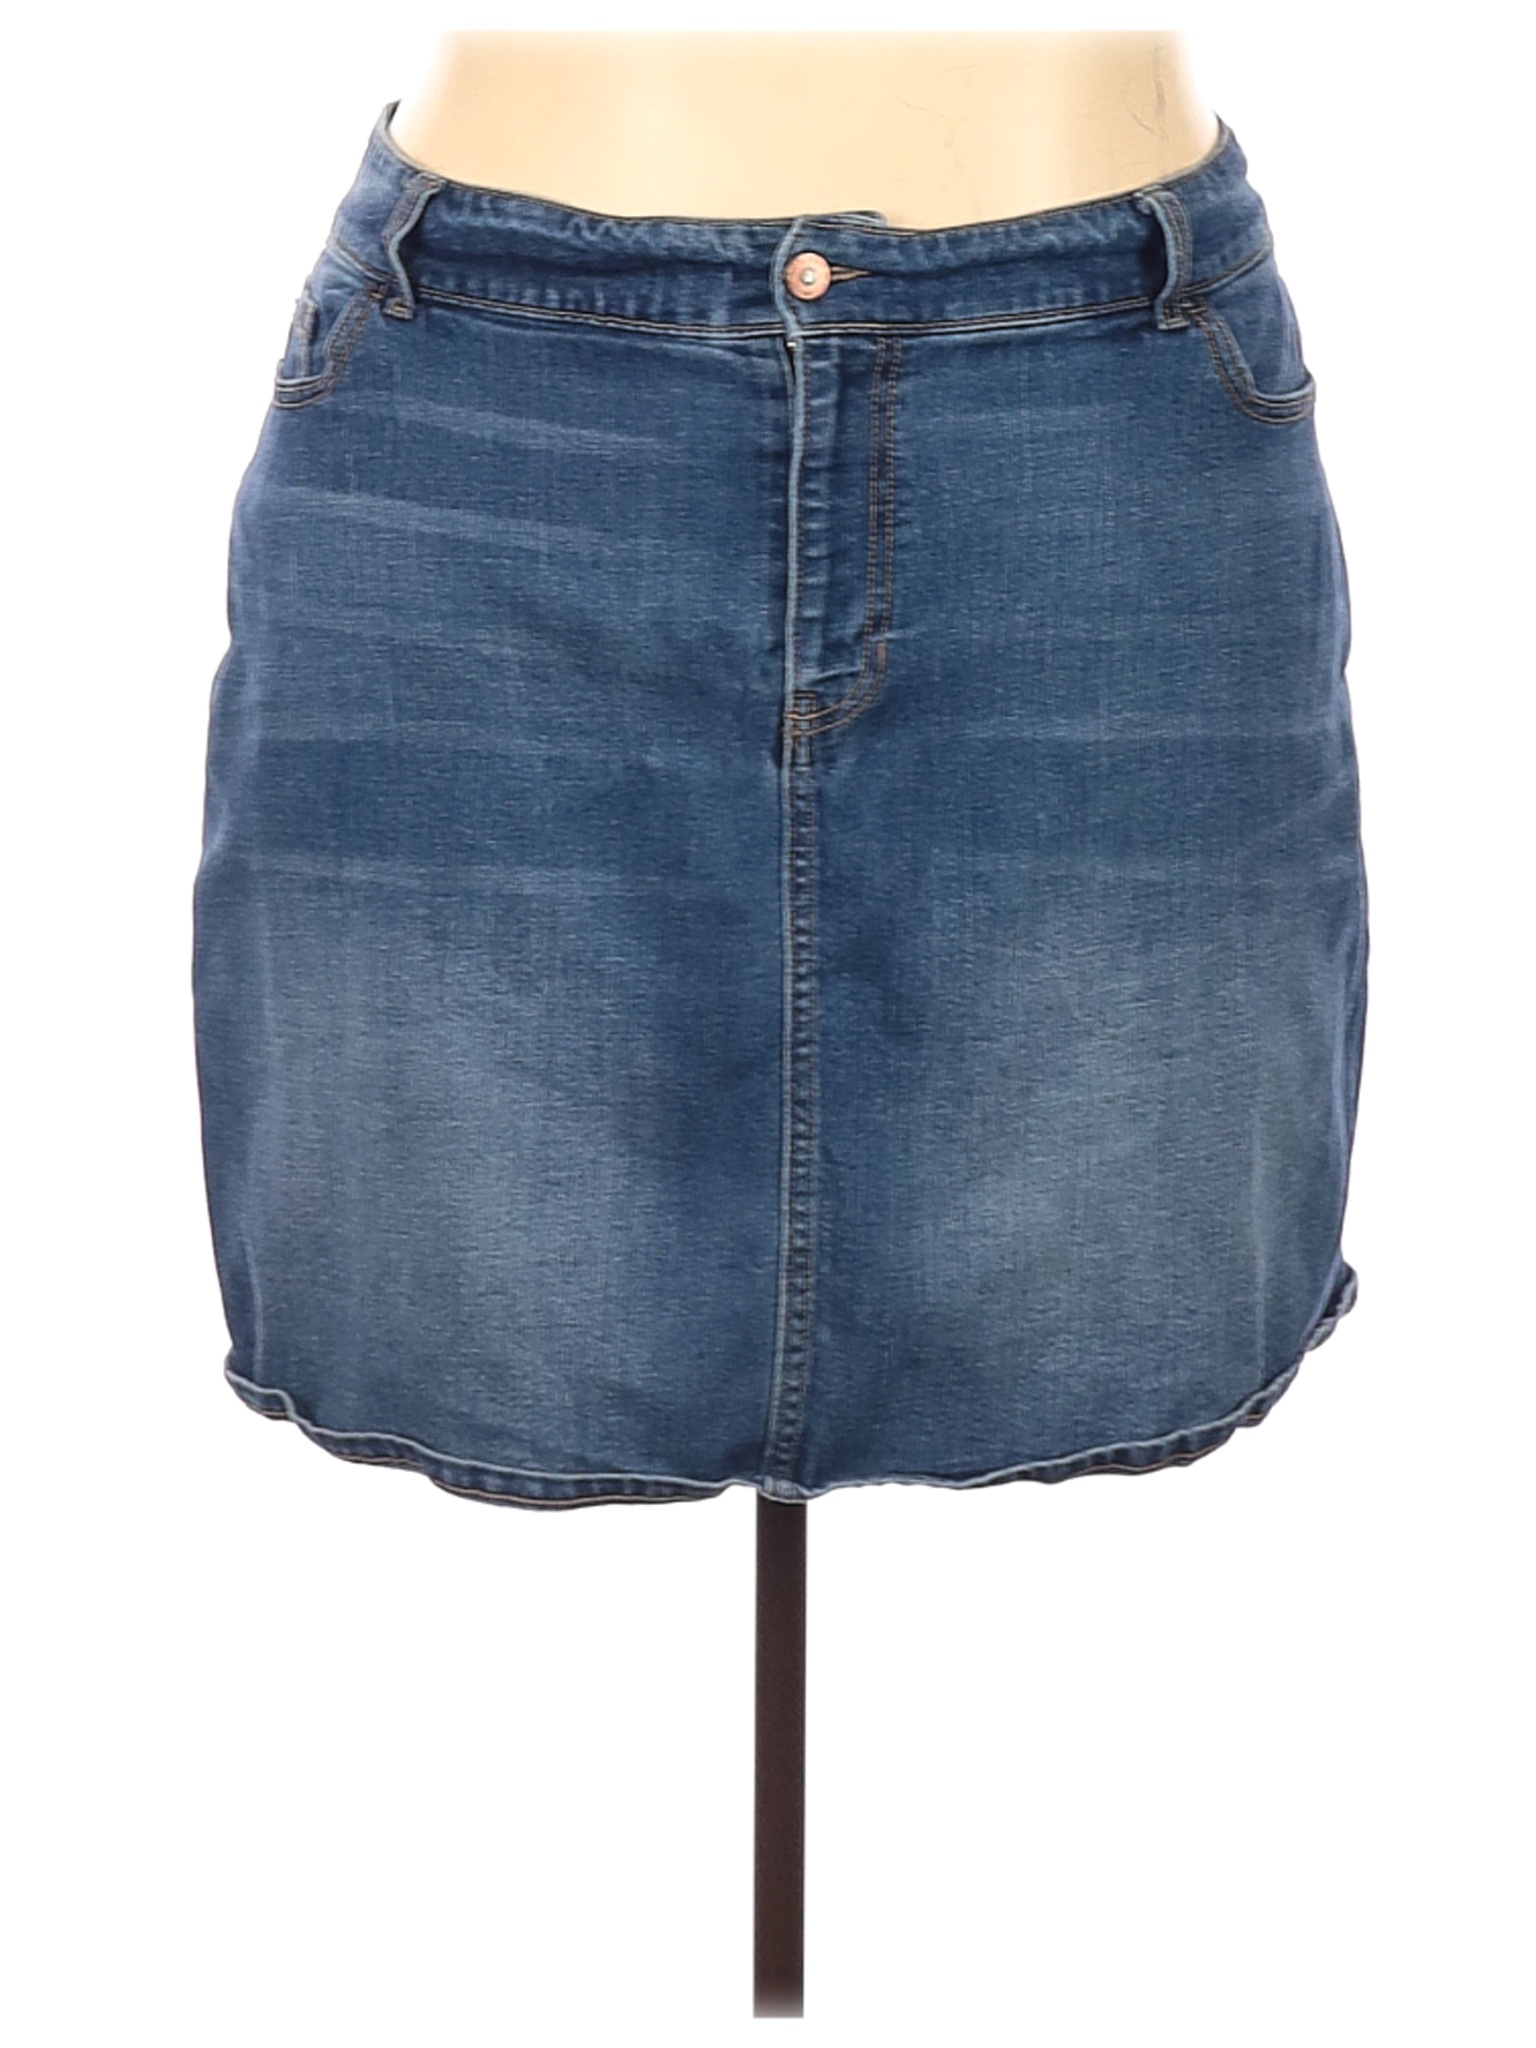 Old Navy Women Blue Denim Skirt 24 Plus | eBay